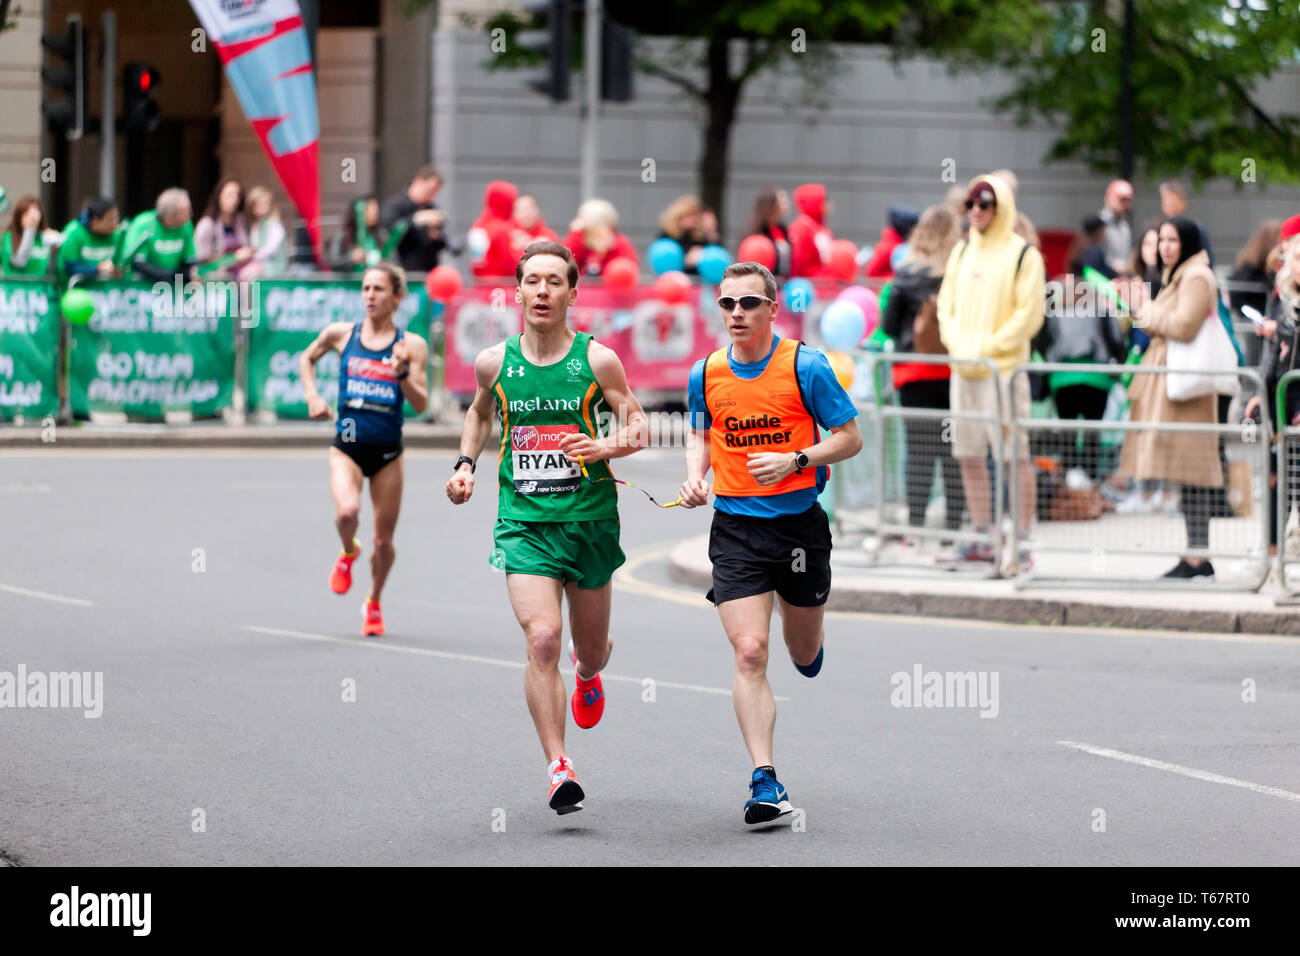 Declan Ryan (IRL), avec son coureur-guide, en compétition dans le monde Para 2019 Marathon de Londres. Declan a terminé 16e dans un temps de 02:45:42 Banque D'Images